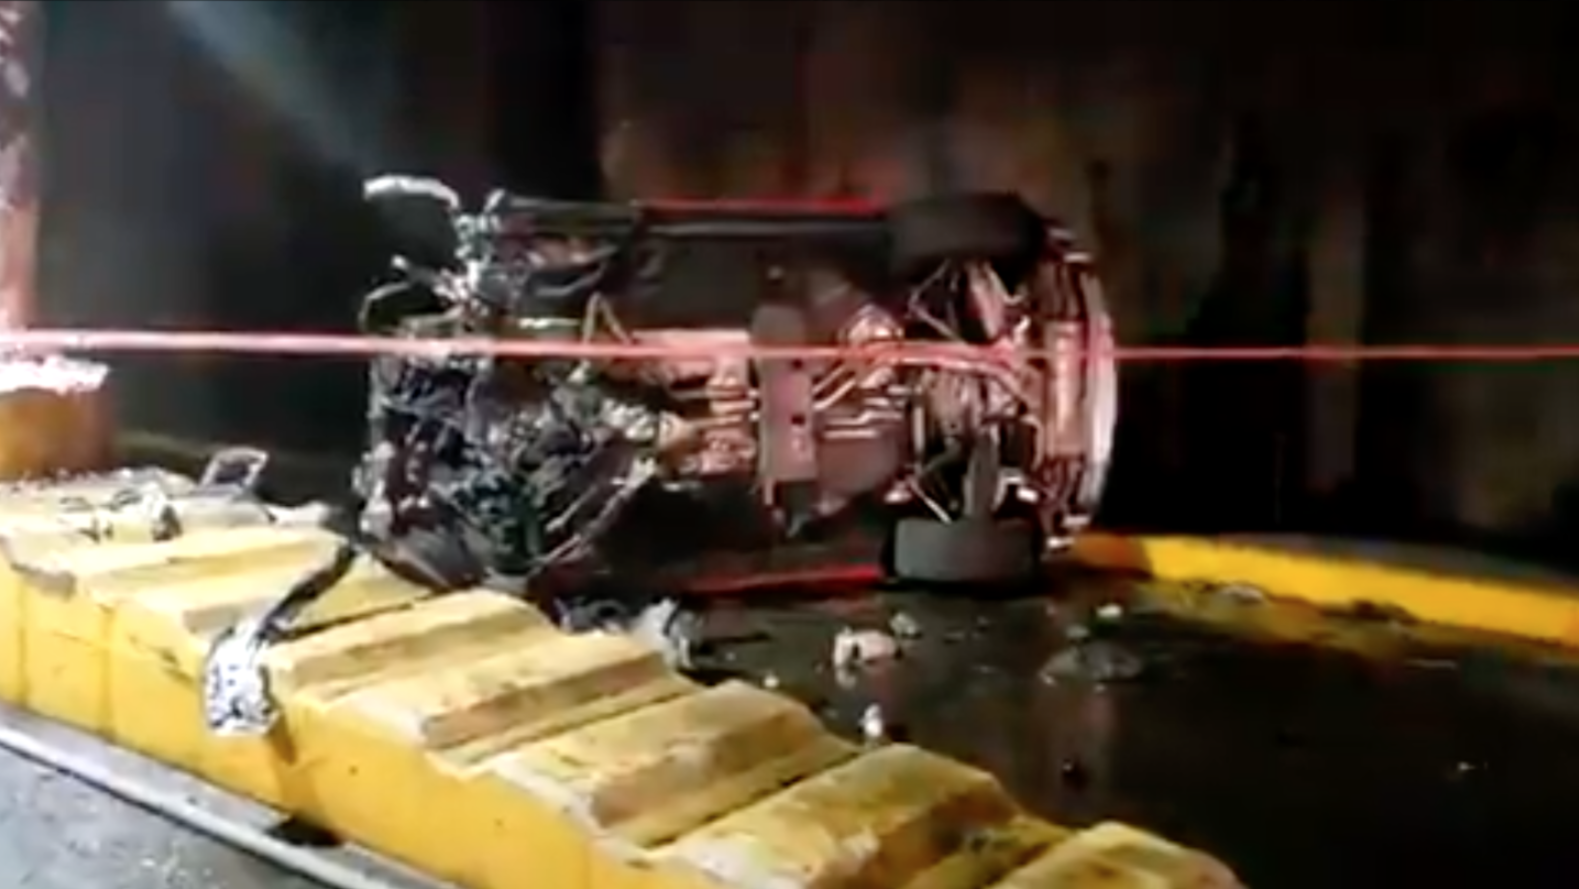 Las impactantes imágenes del Lamborghini en llamas en el que murió  calcinado un presunto narco - Infobae